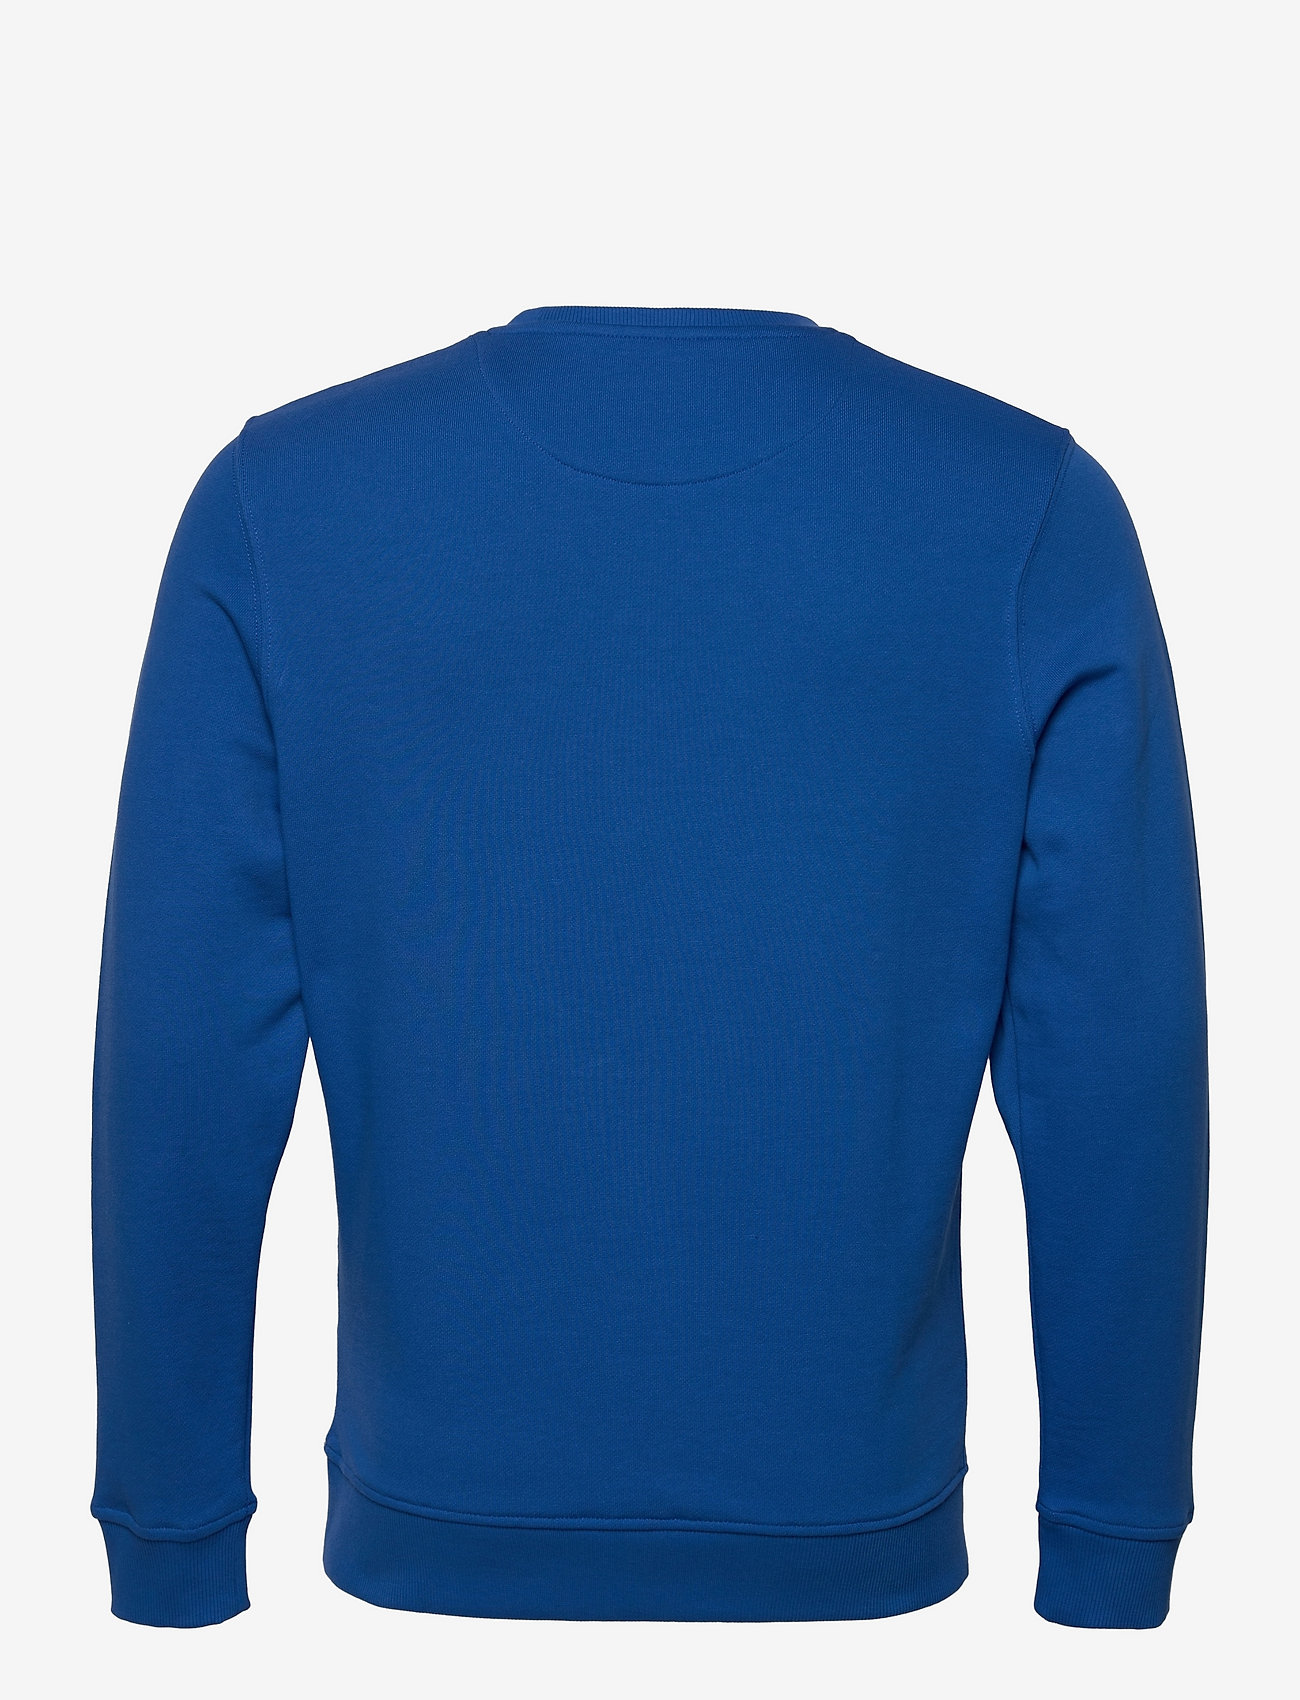 Lyle & Scott - Crew Neck Sweatshirt - sweatshirts - bright blue - 1